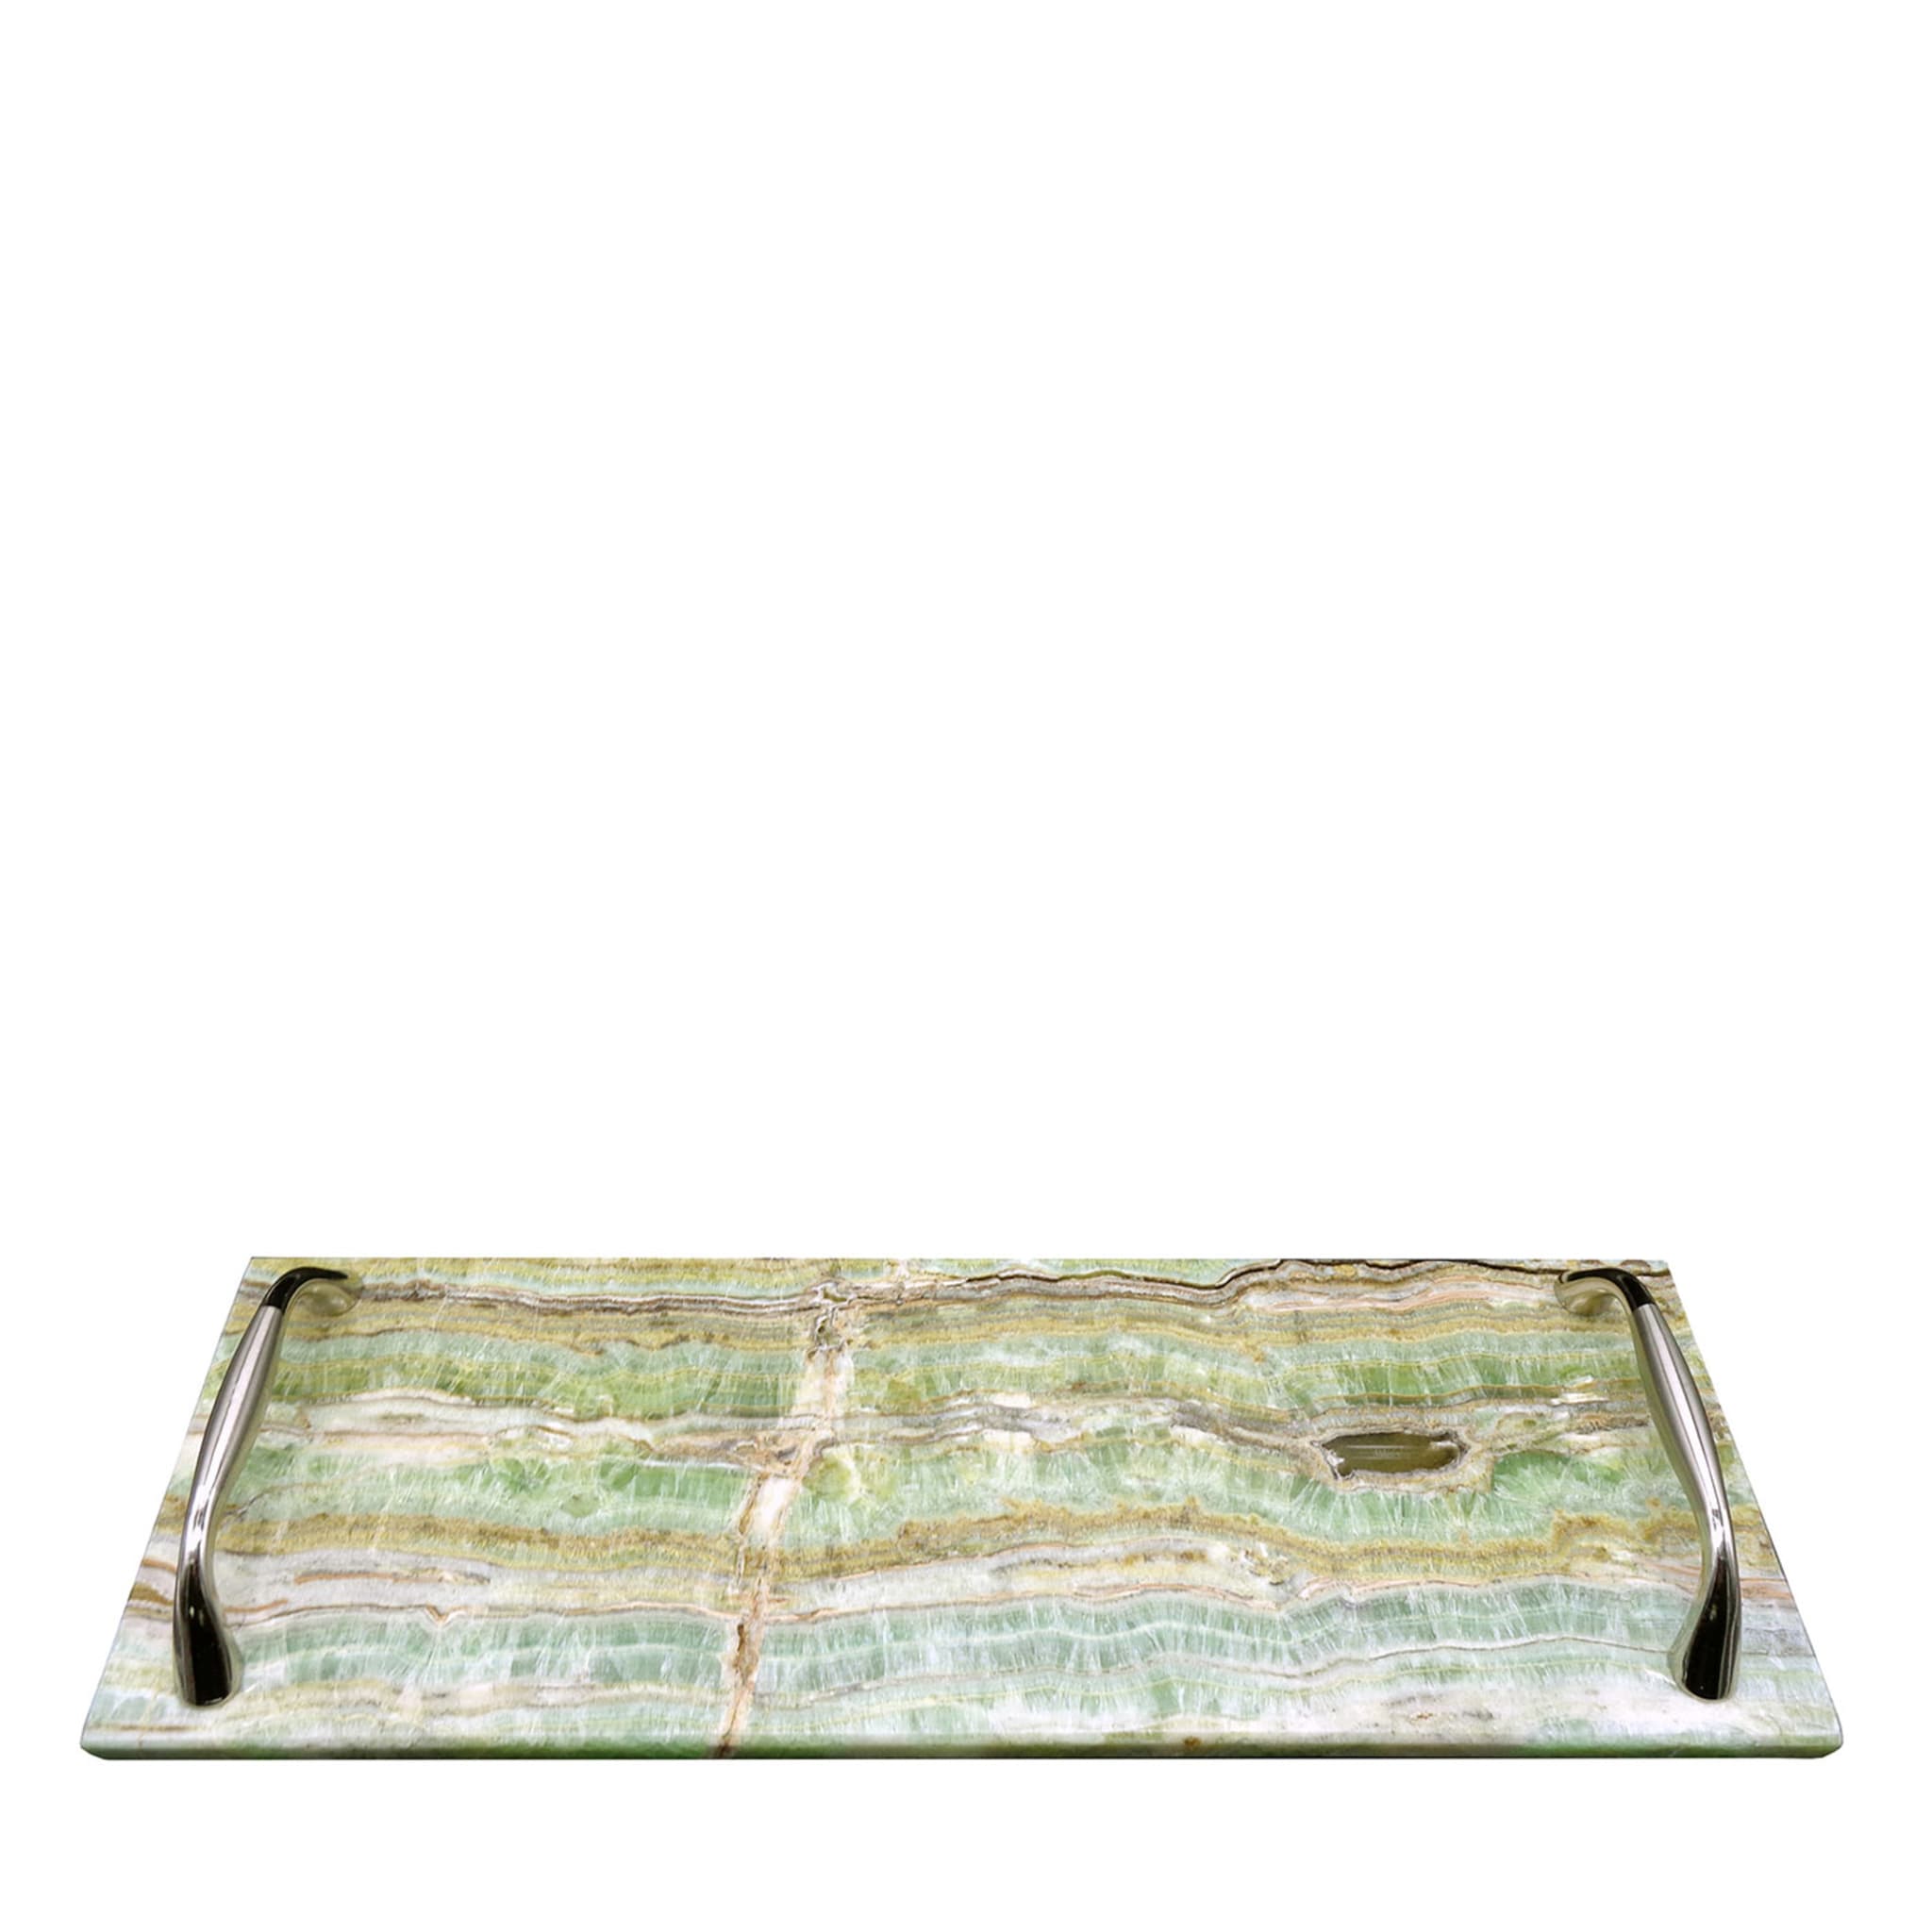 Vassoio rettangolare in onice smeraldo con maniglie in acciaio #1 - Vista principale